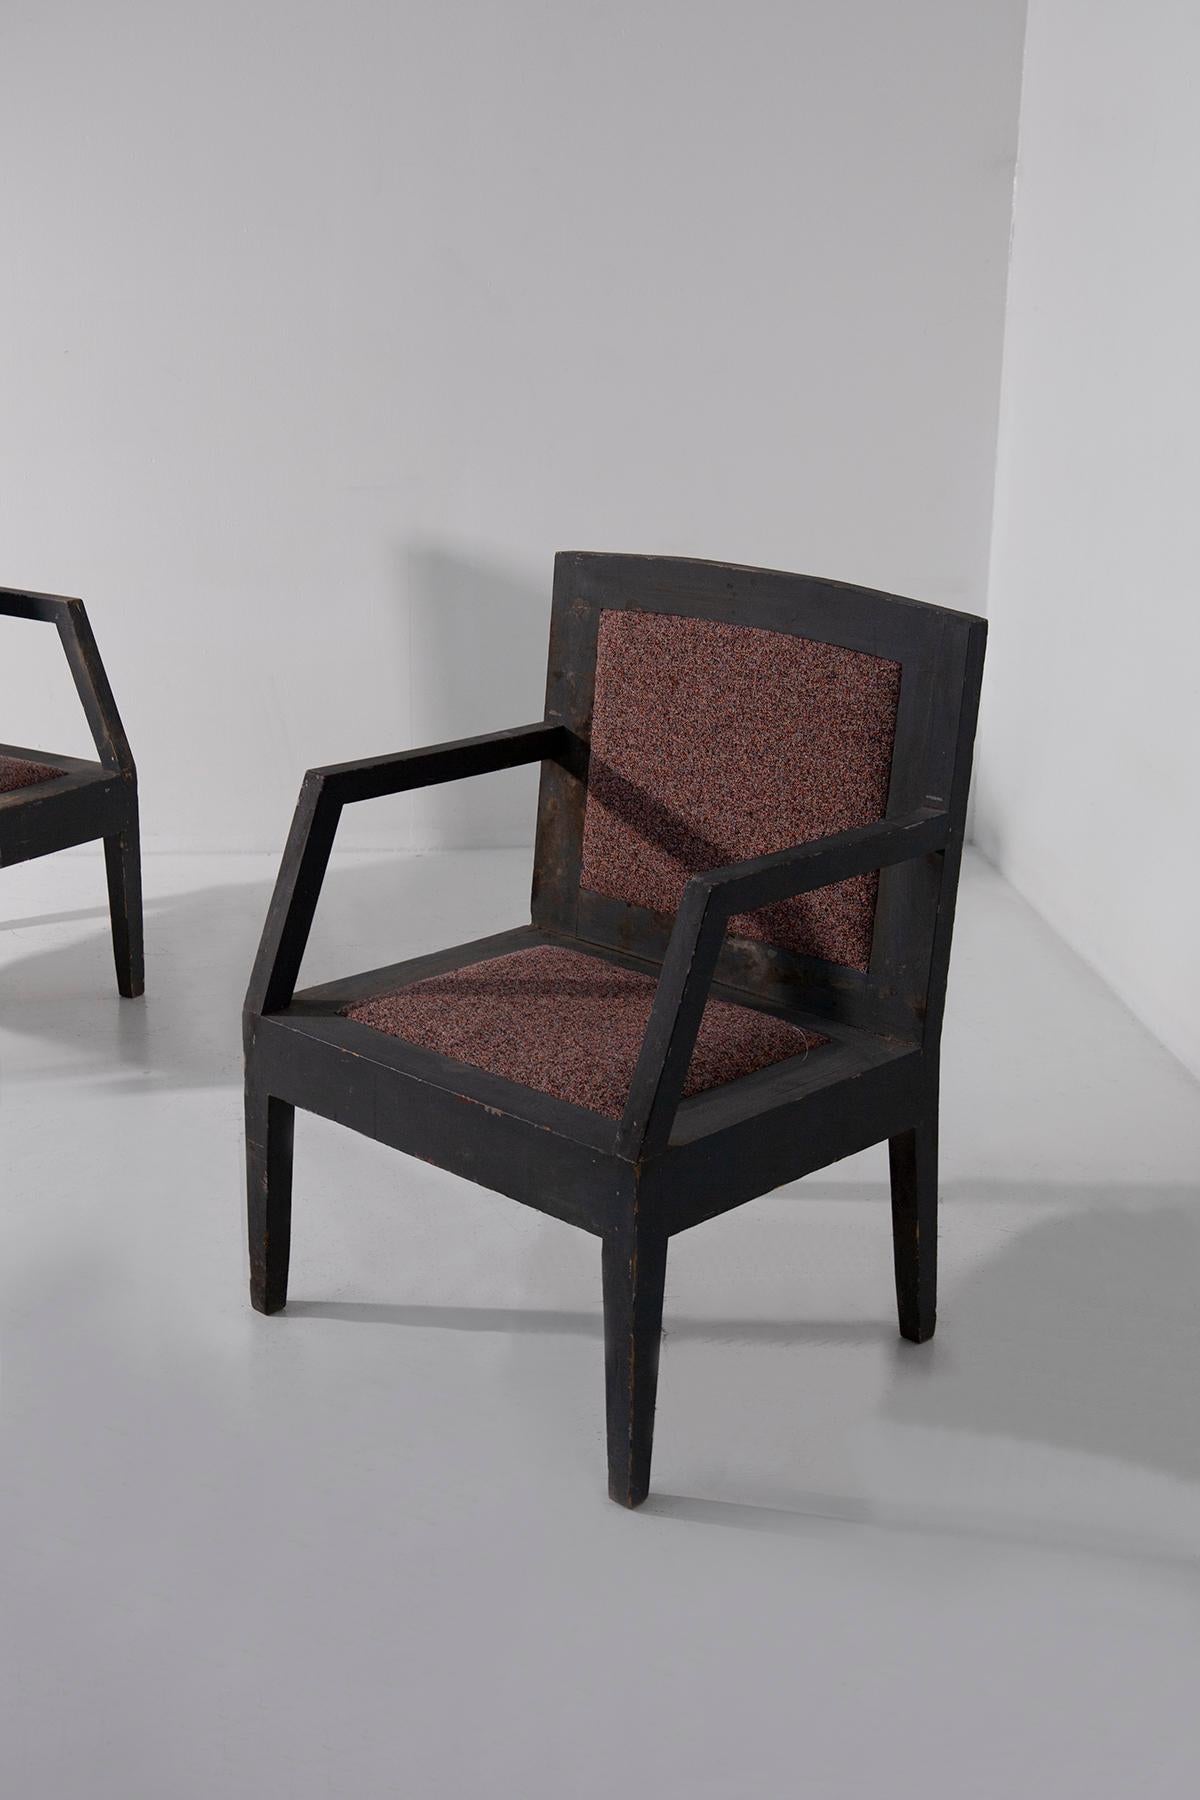 Début du 20ème siècle Paire de fauteuils futuristes italiens avec tissu coloré en vente